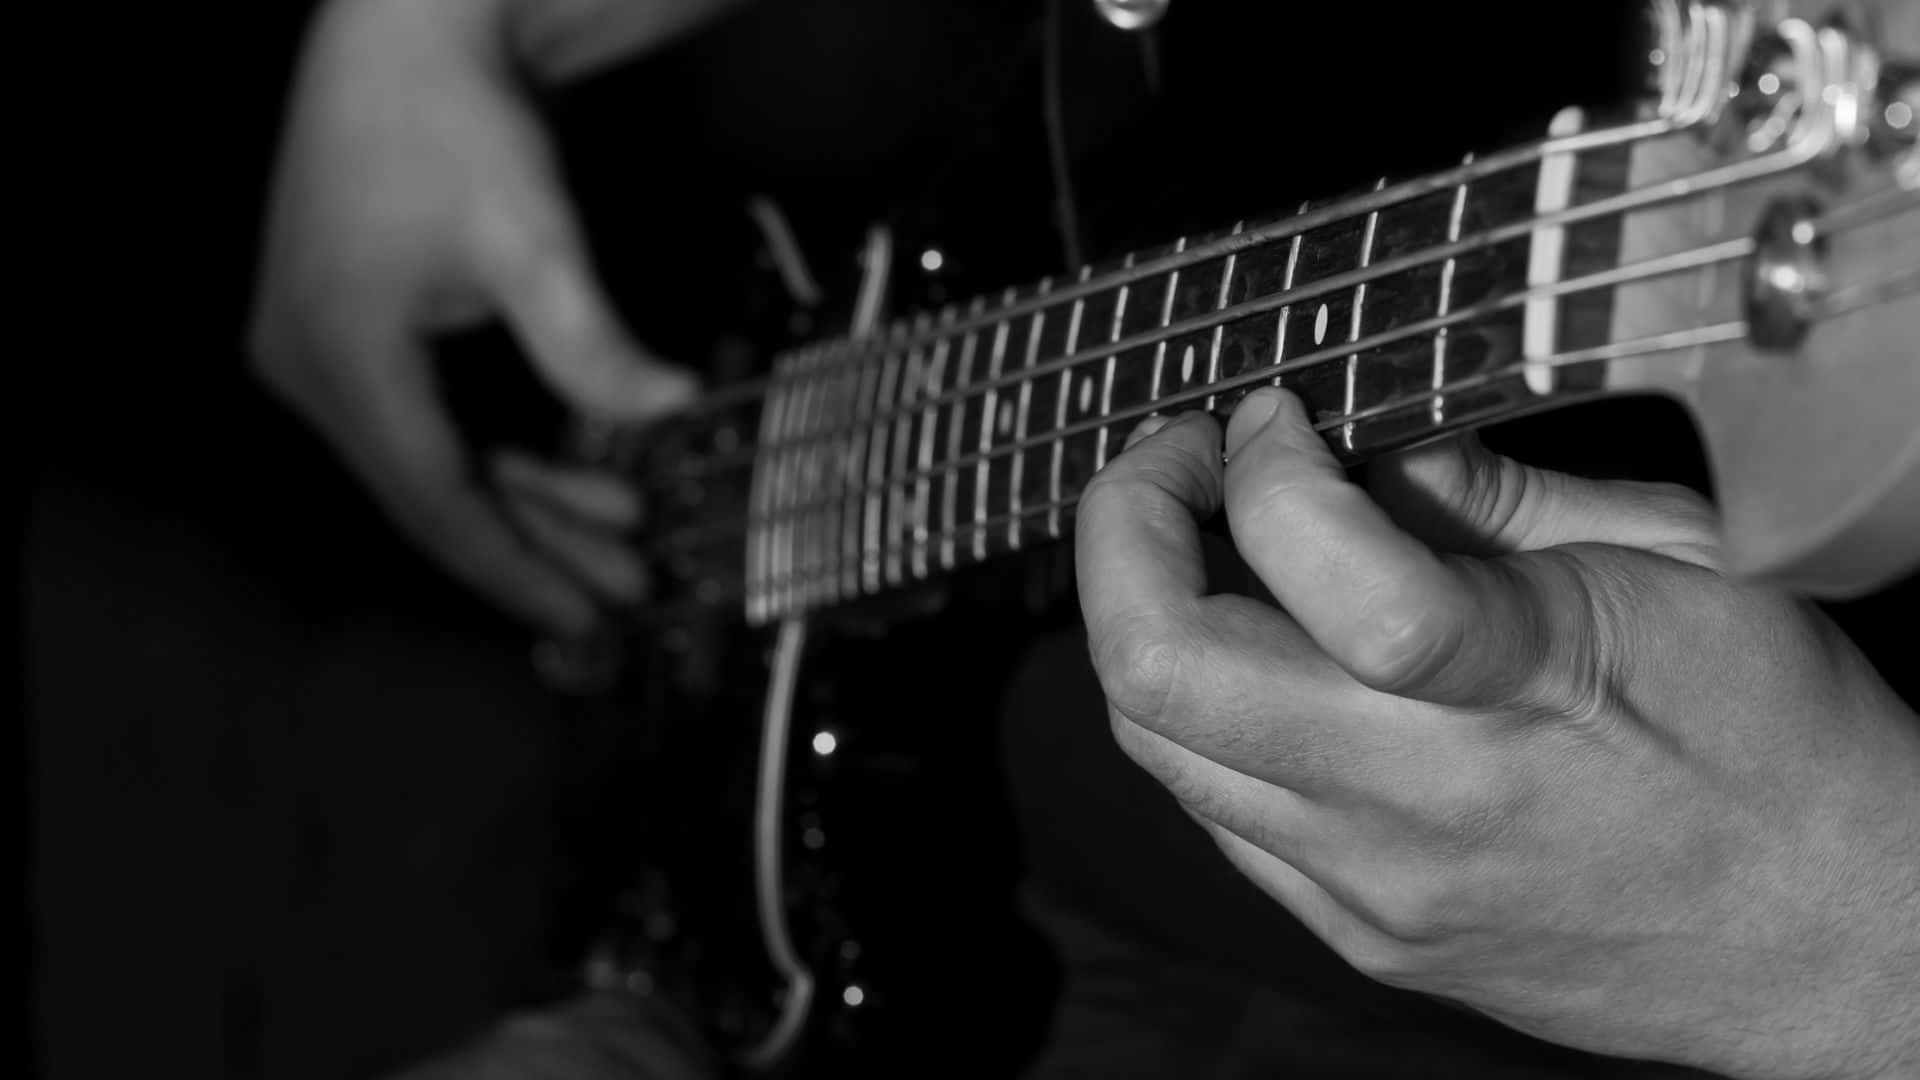 Fondode Pantalla De Guitarra En Blanco Y Negro. Fondo de pantalla